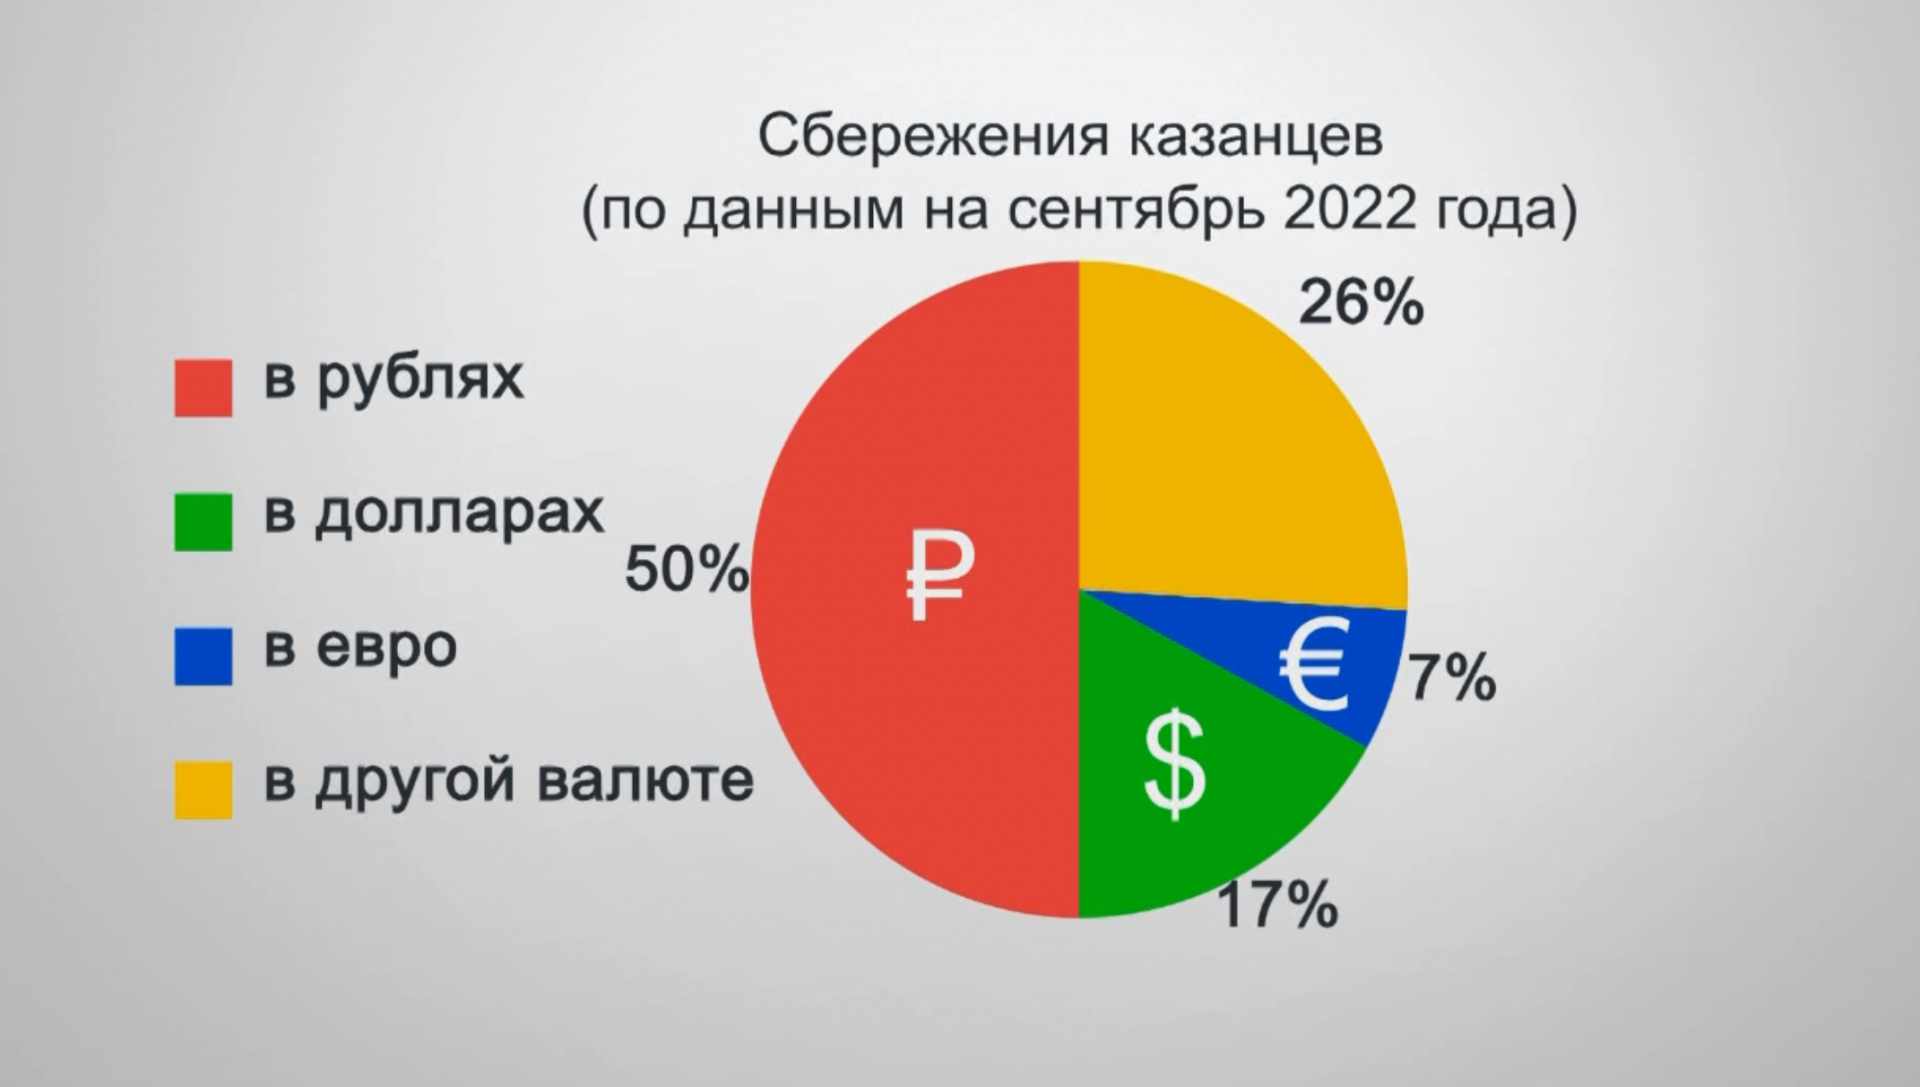 Половина казанцев считают рубль надежной валютой для хранения сбережений